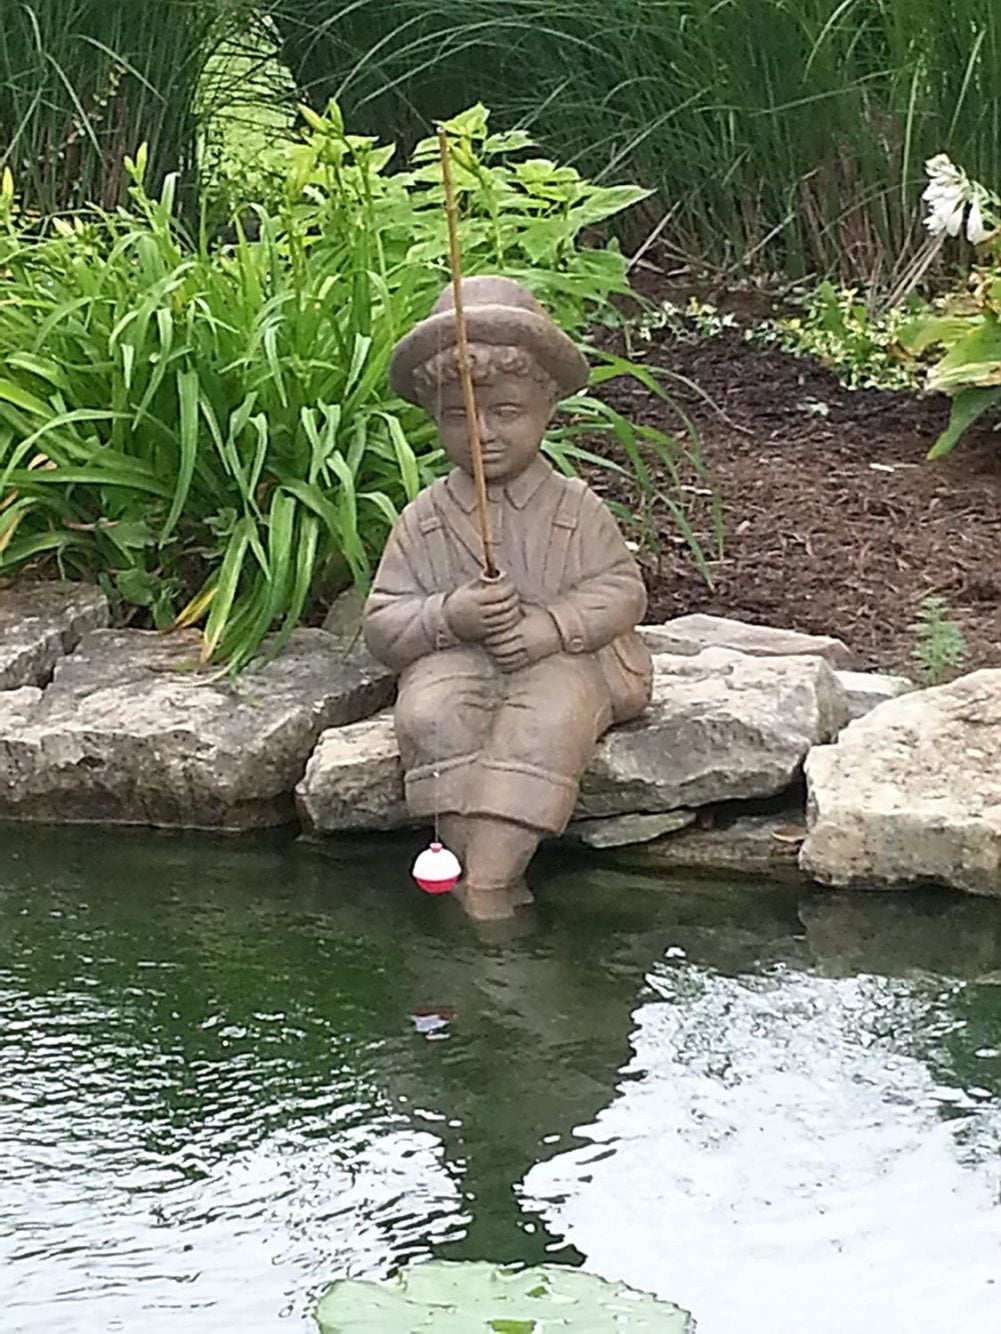 Pond Accent Boy Fishing Statue Garden Lawn Sculpture Decor Fisher Man Figurine 